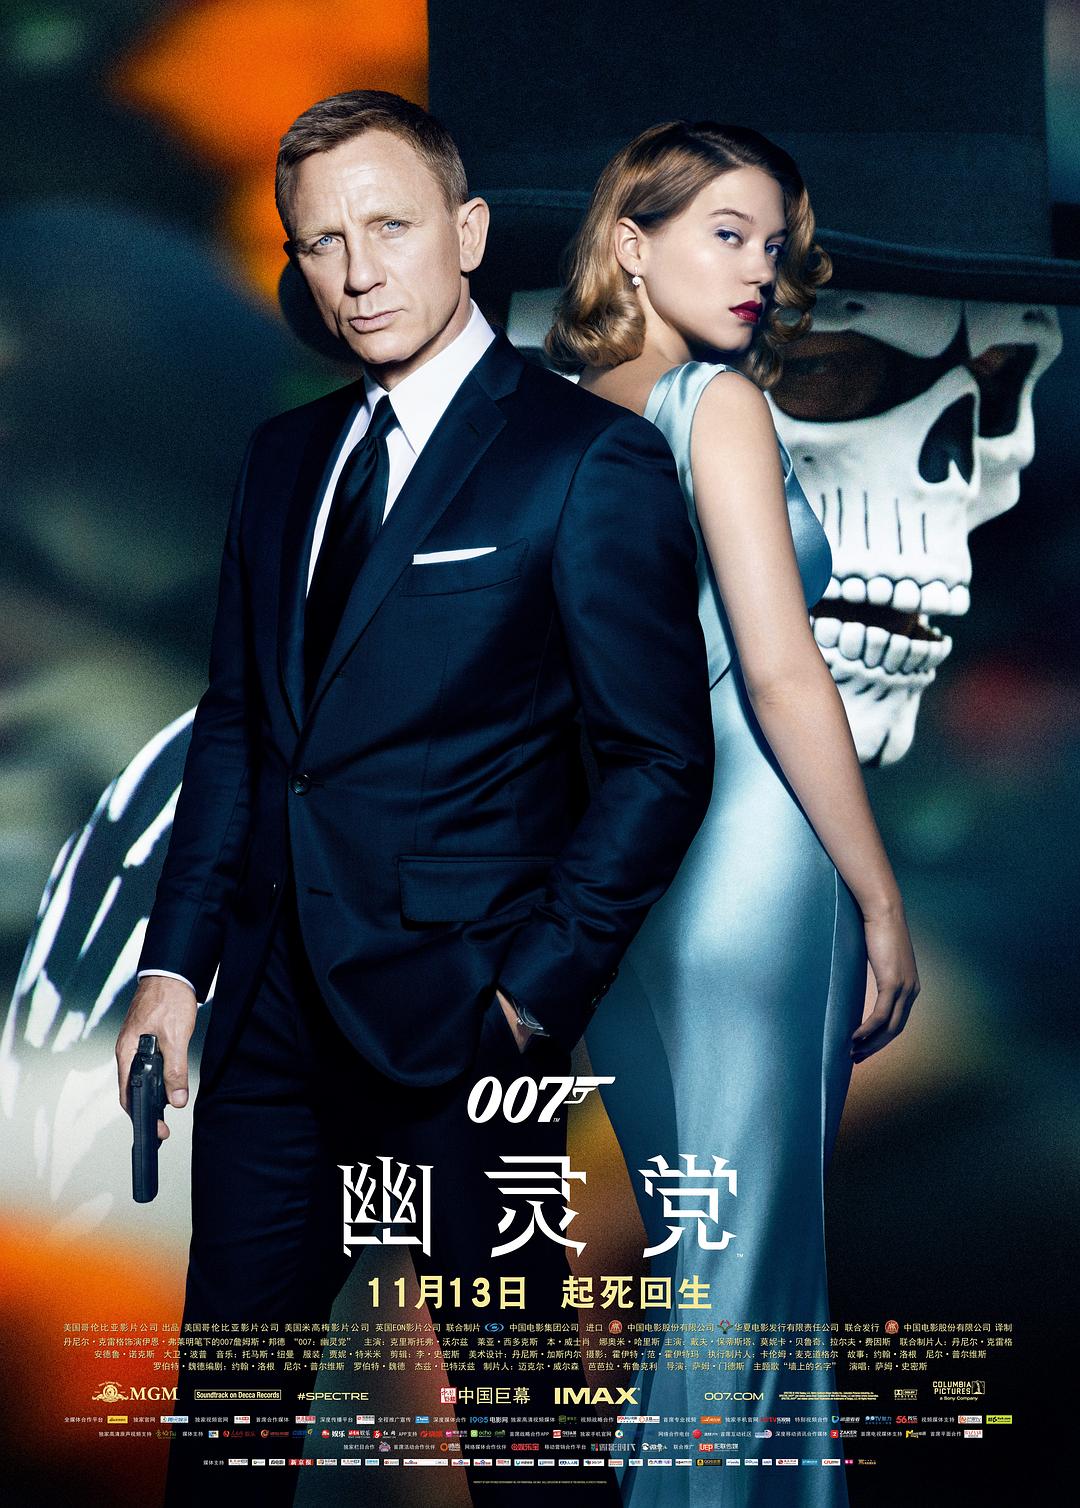 007:鬼魂党/007系列24:大破鬼魂危机 Spectre.2015.1080p.BluRay.x264.DTS-SWTYBLZ 16.70GB-1.png